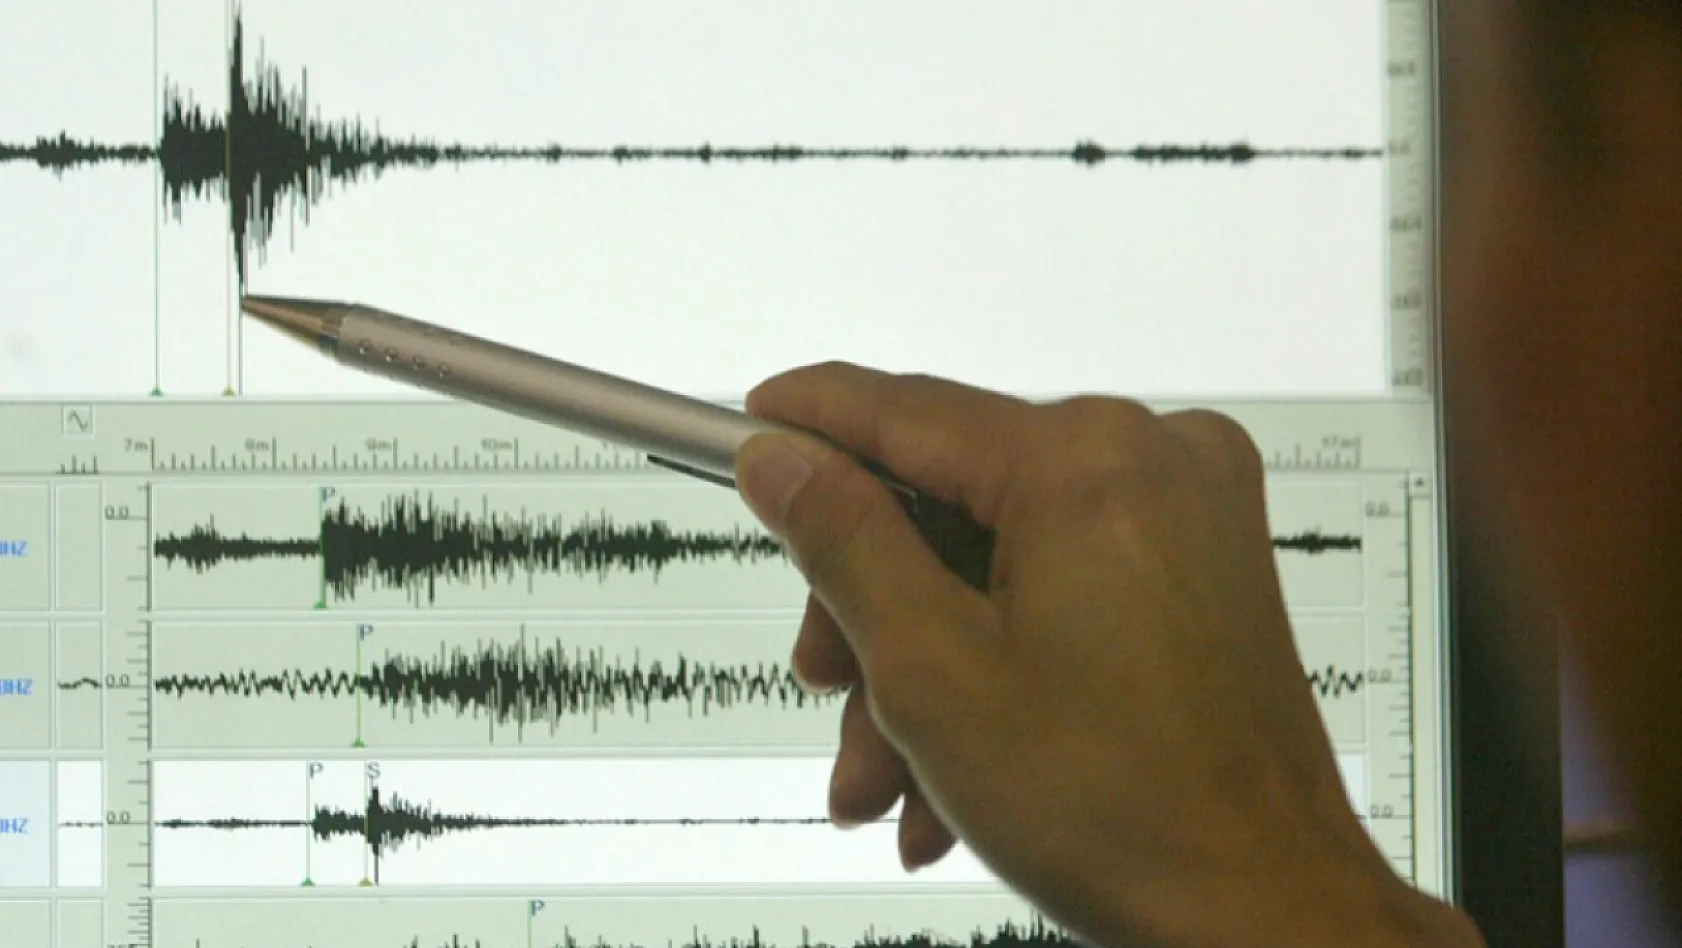 Uzman isimden sert eleştiri! 'Açıklamalar depremlerden daha tehlikeli'